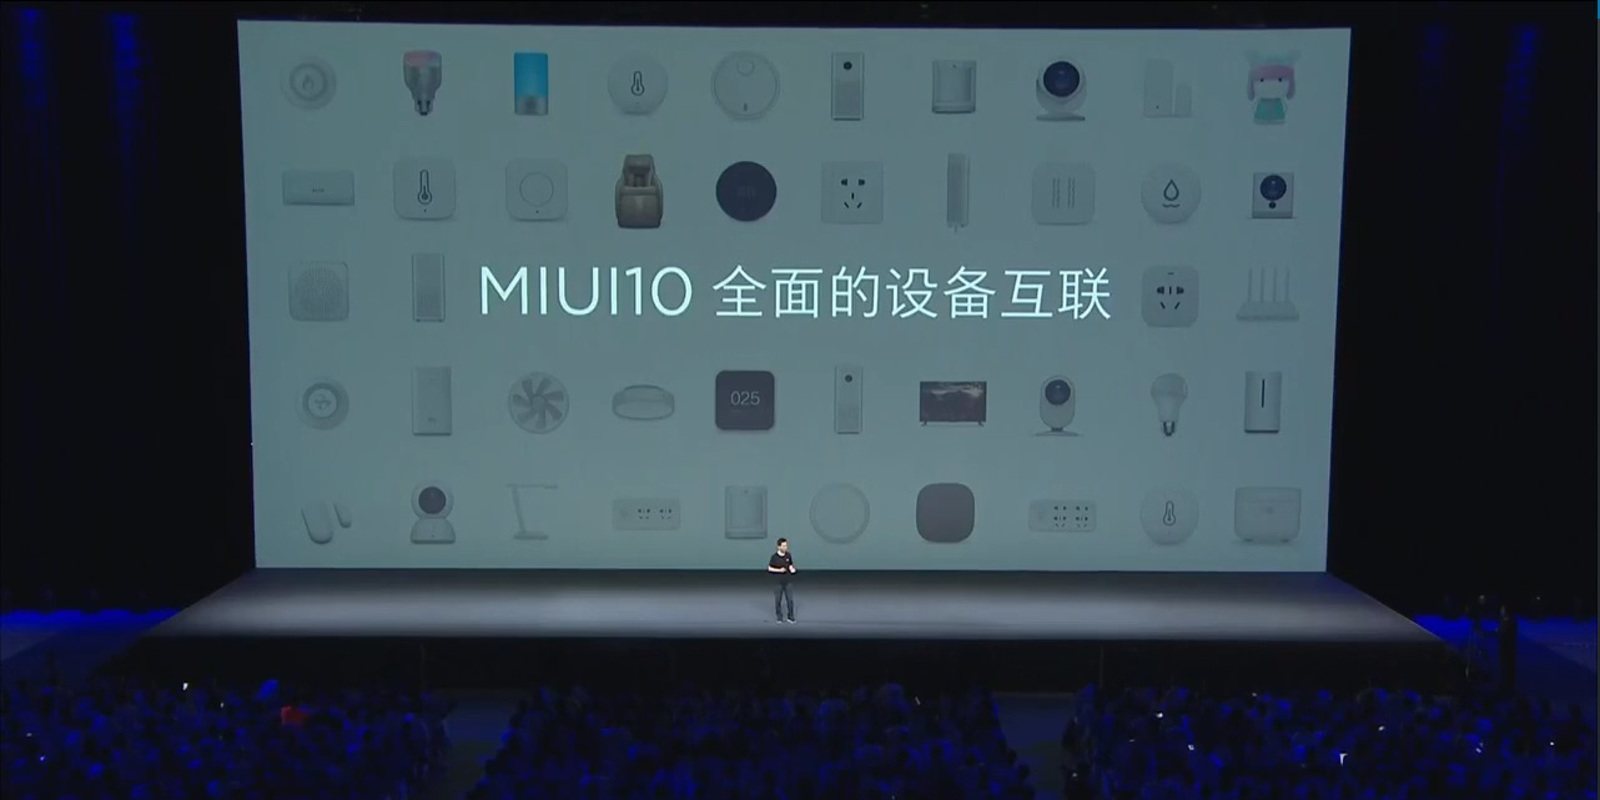 MIUI 10 ya es oficial: Todo lo que debes saber sobre la actualización de Xiaomi